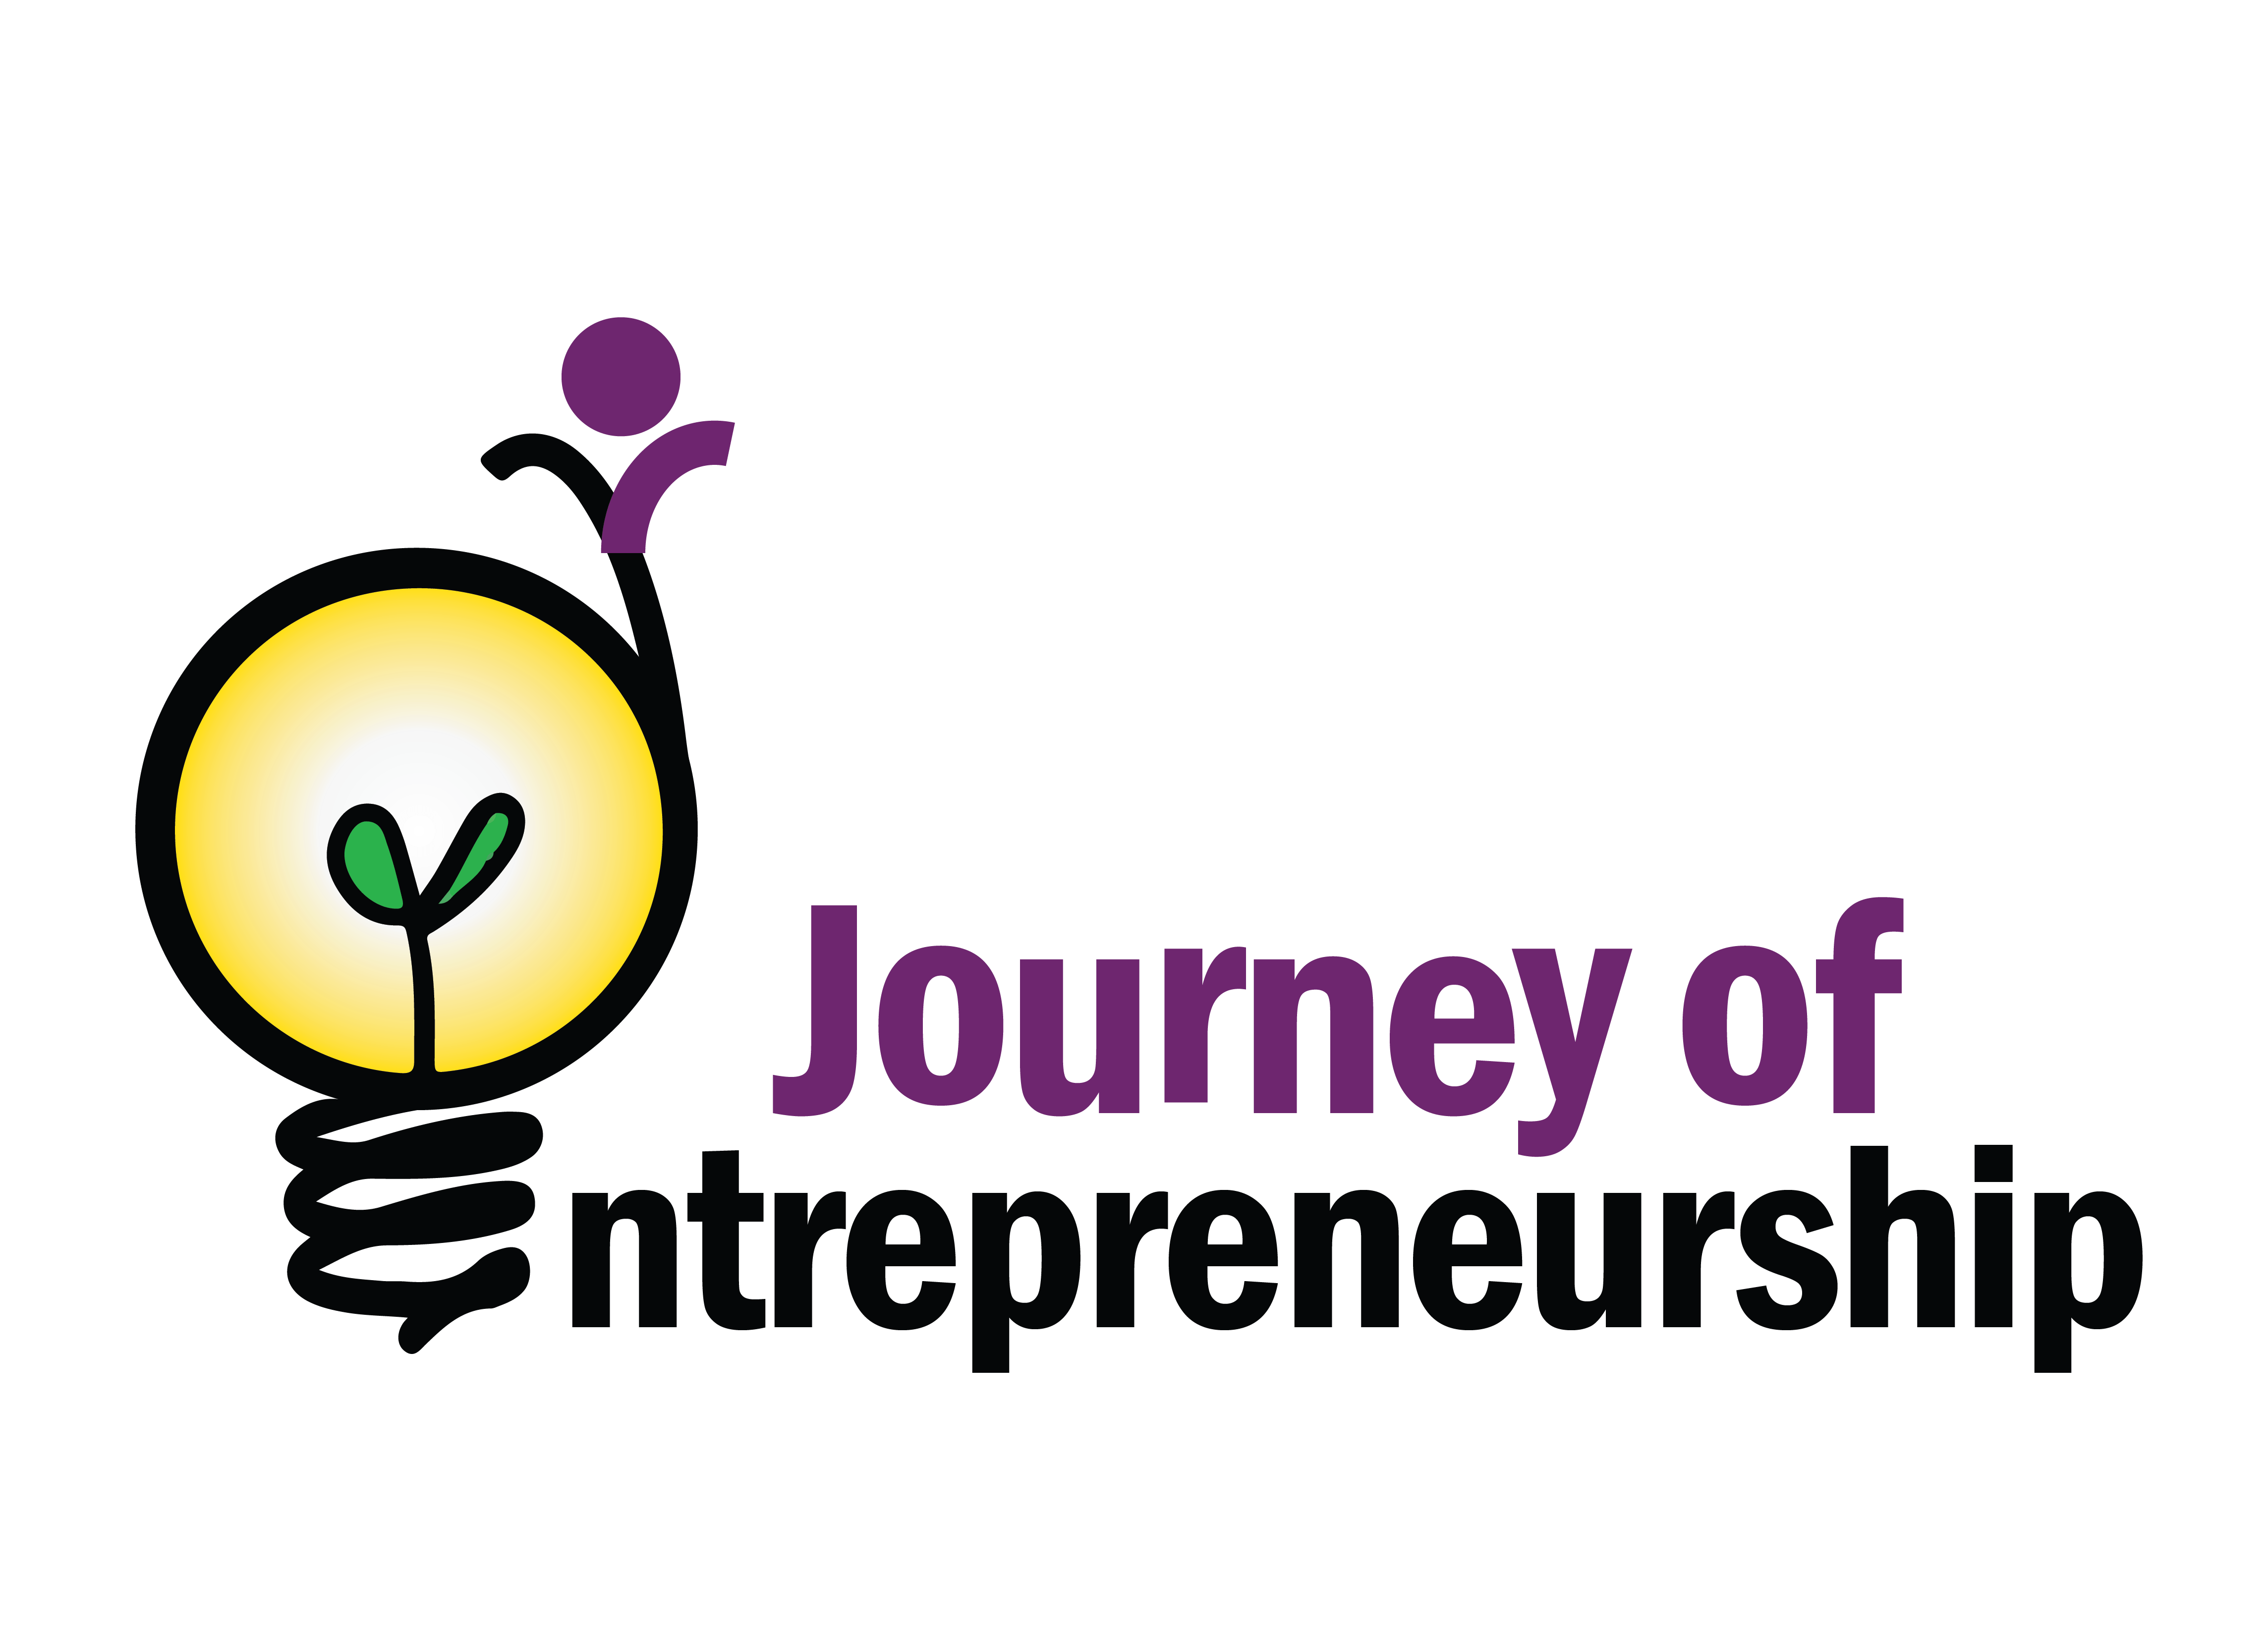 Entrepeneurship Logo - Journey of Entrepreneurship